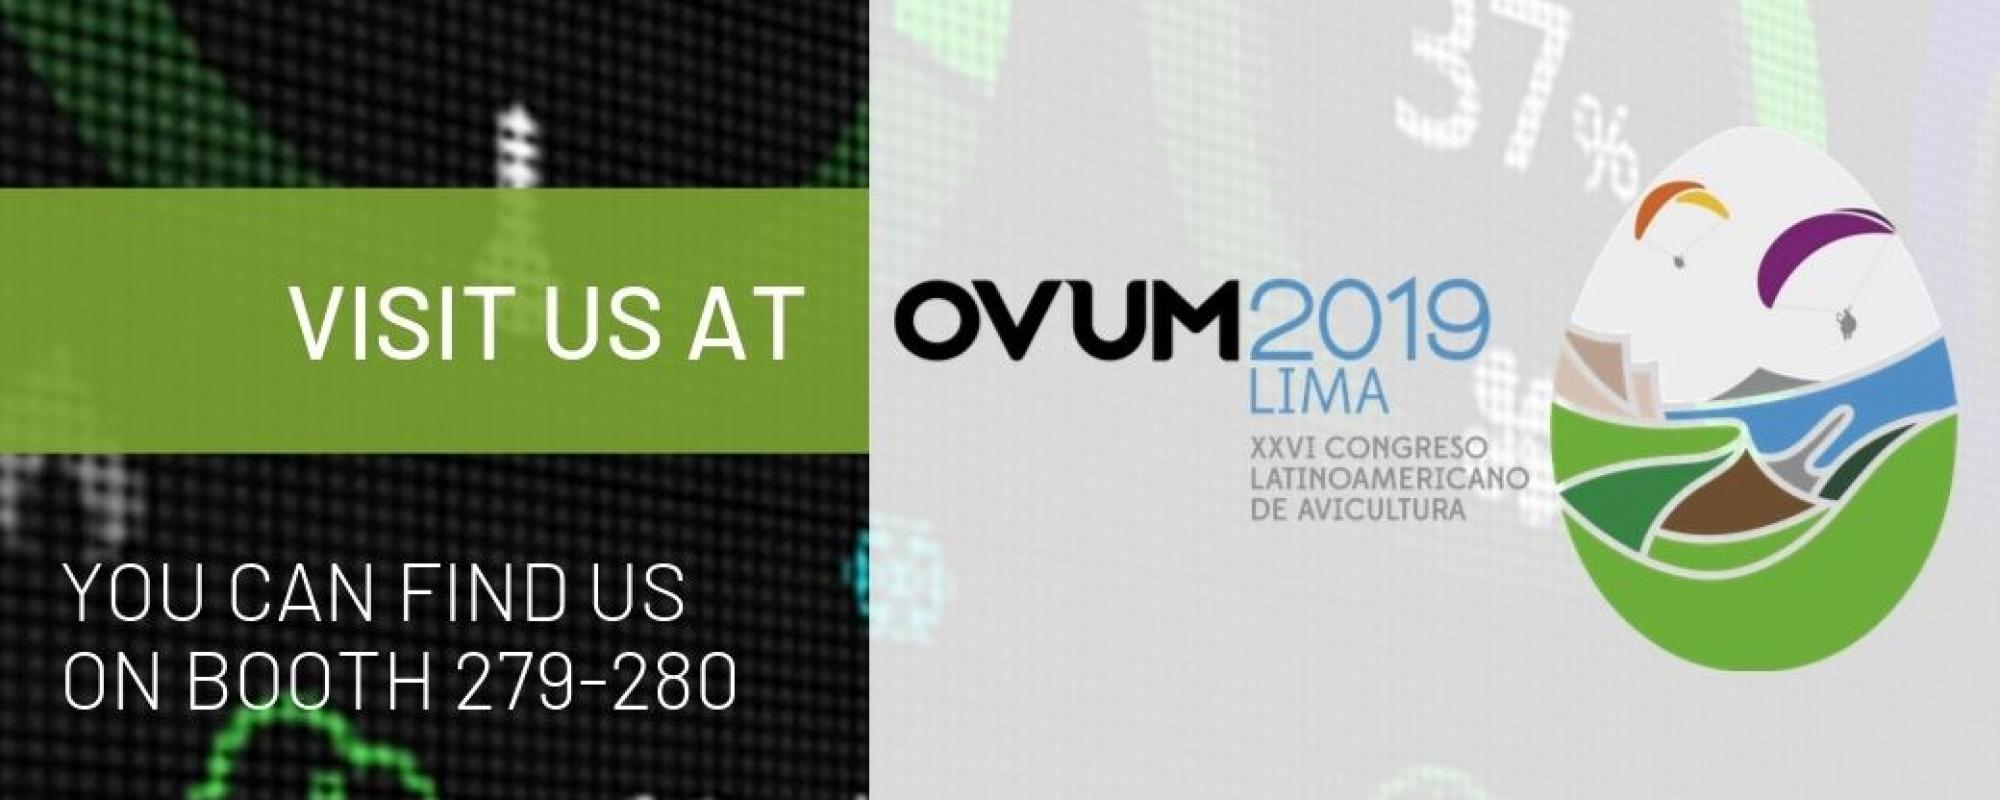 Fancom at OVUM 2019 in Peru - Poultry Congress